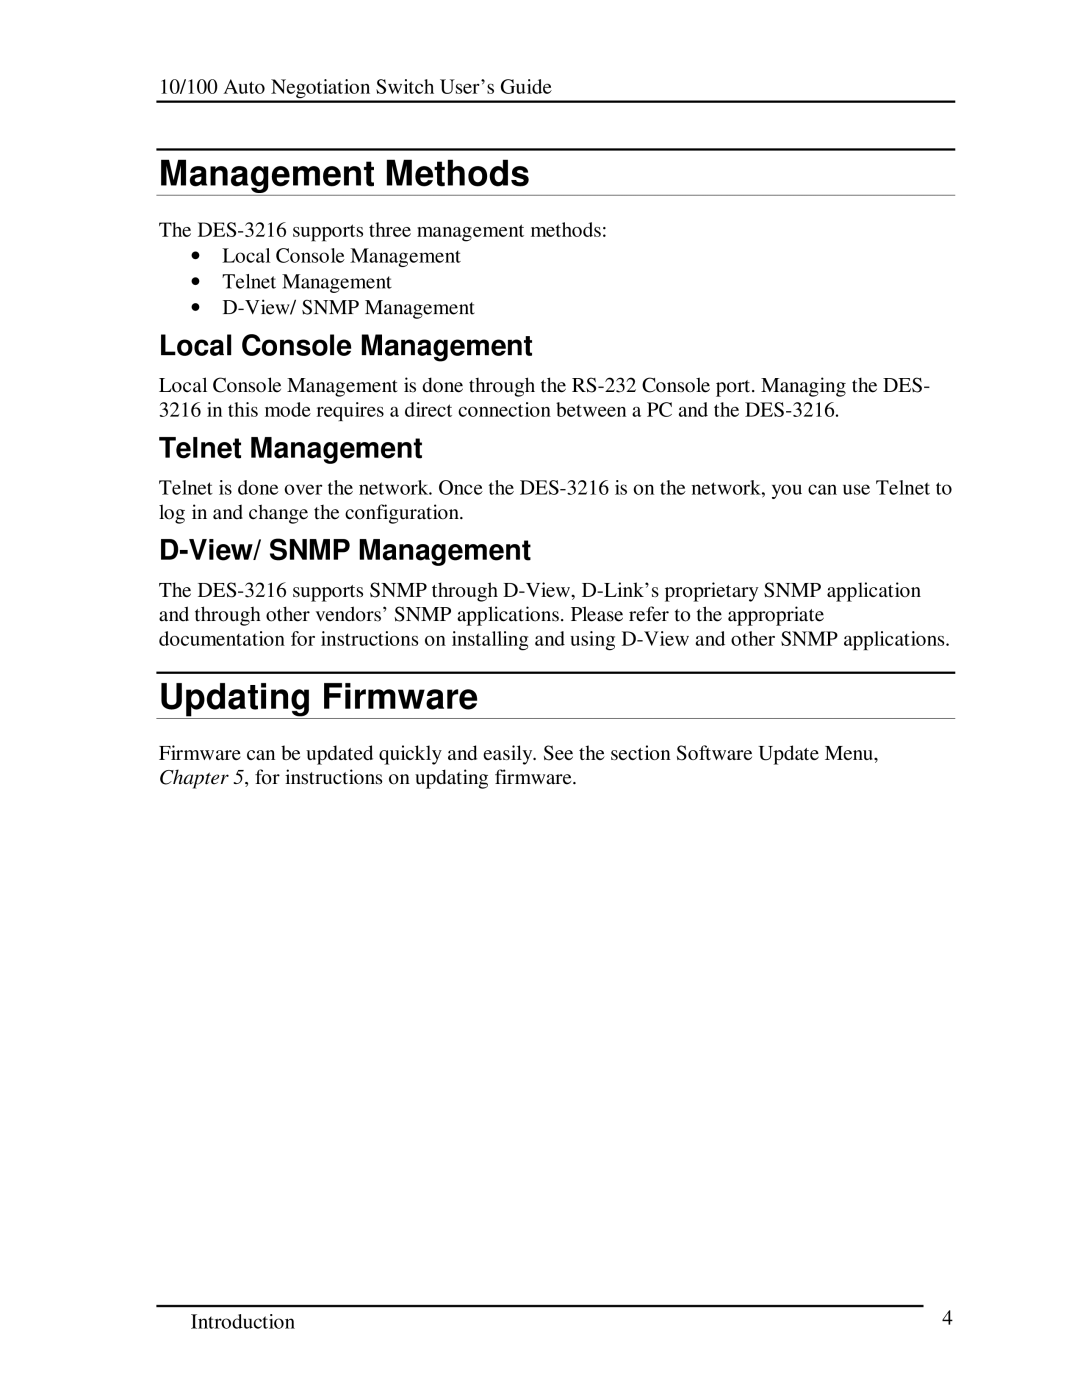 D-Link DES-3216 Management Methods, Updating Firmware, Local Console Management, Telnet Management, View/ Snmp Management 